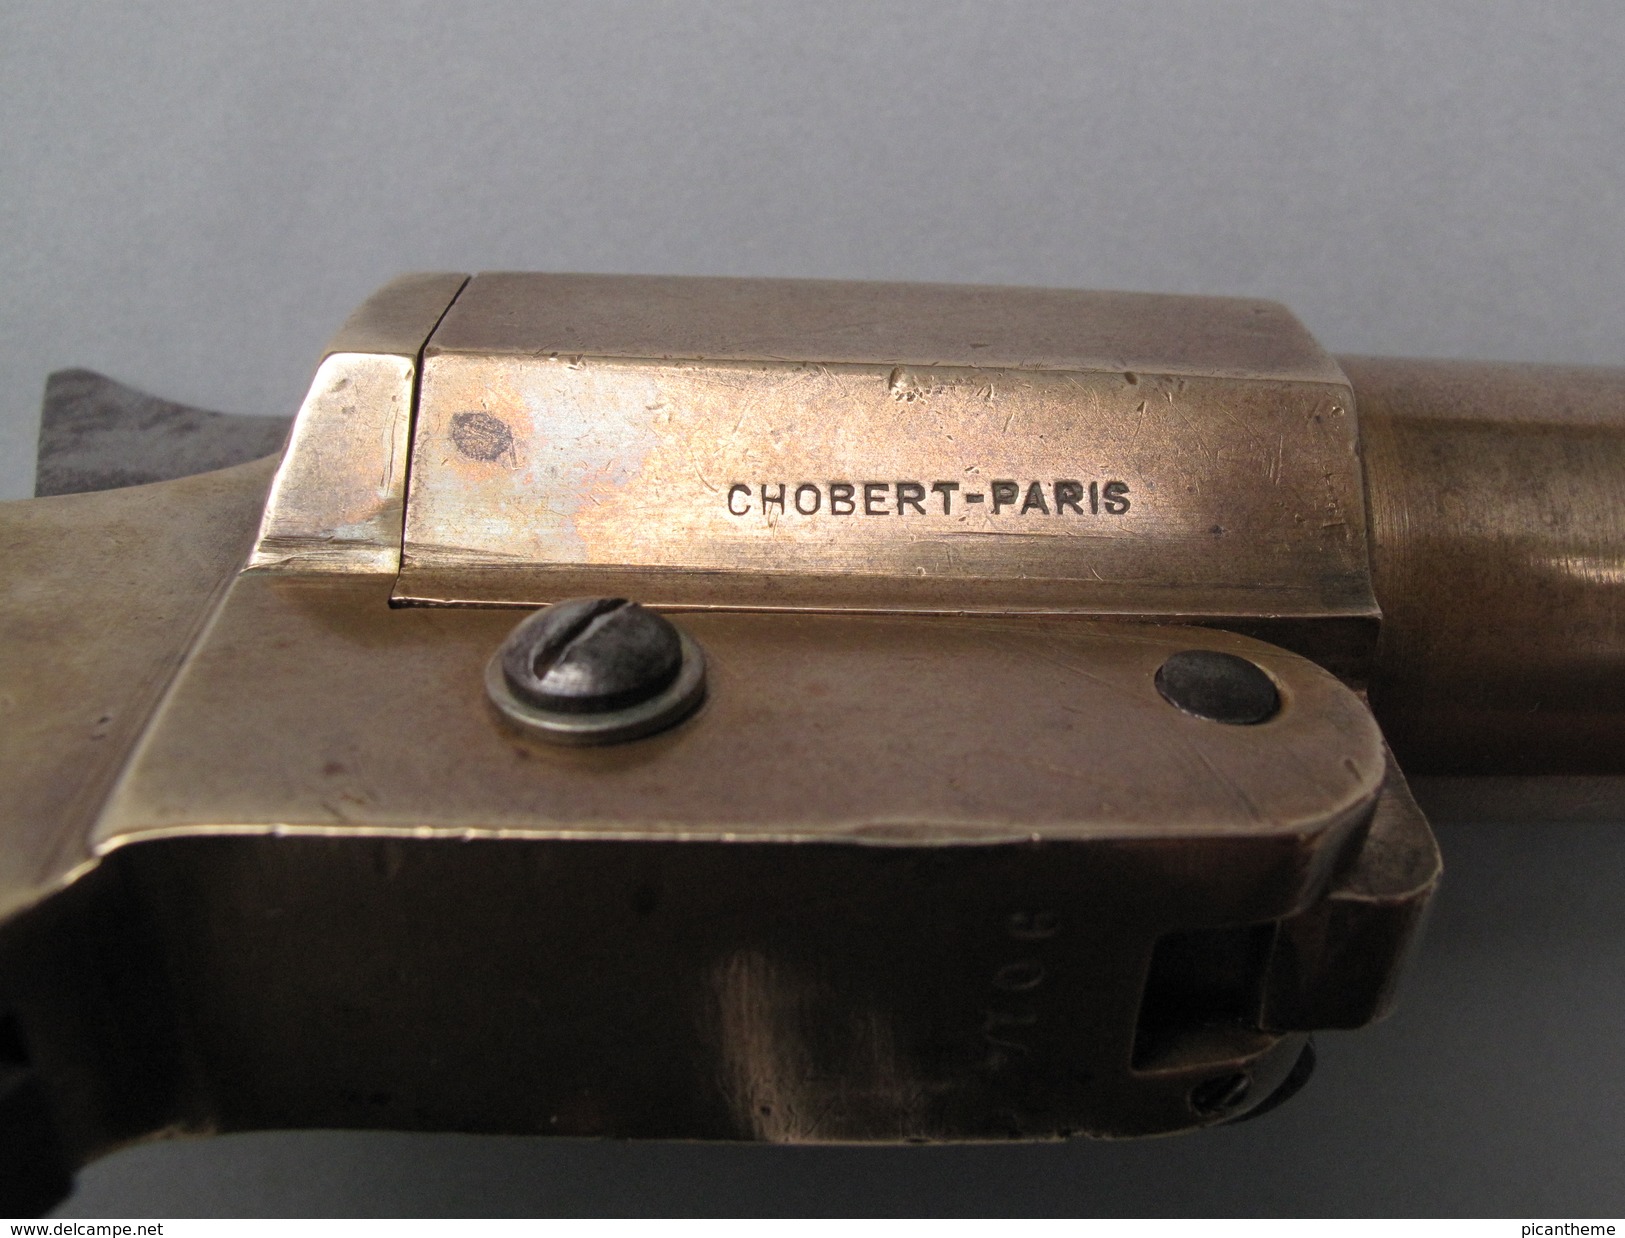 Très beau pistolet lance-fusées réglementaire français modèle Chobert 1914-1918